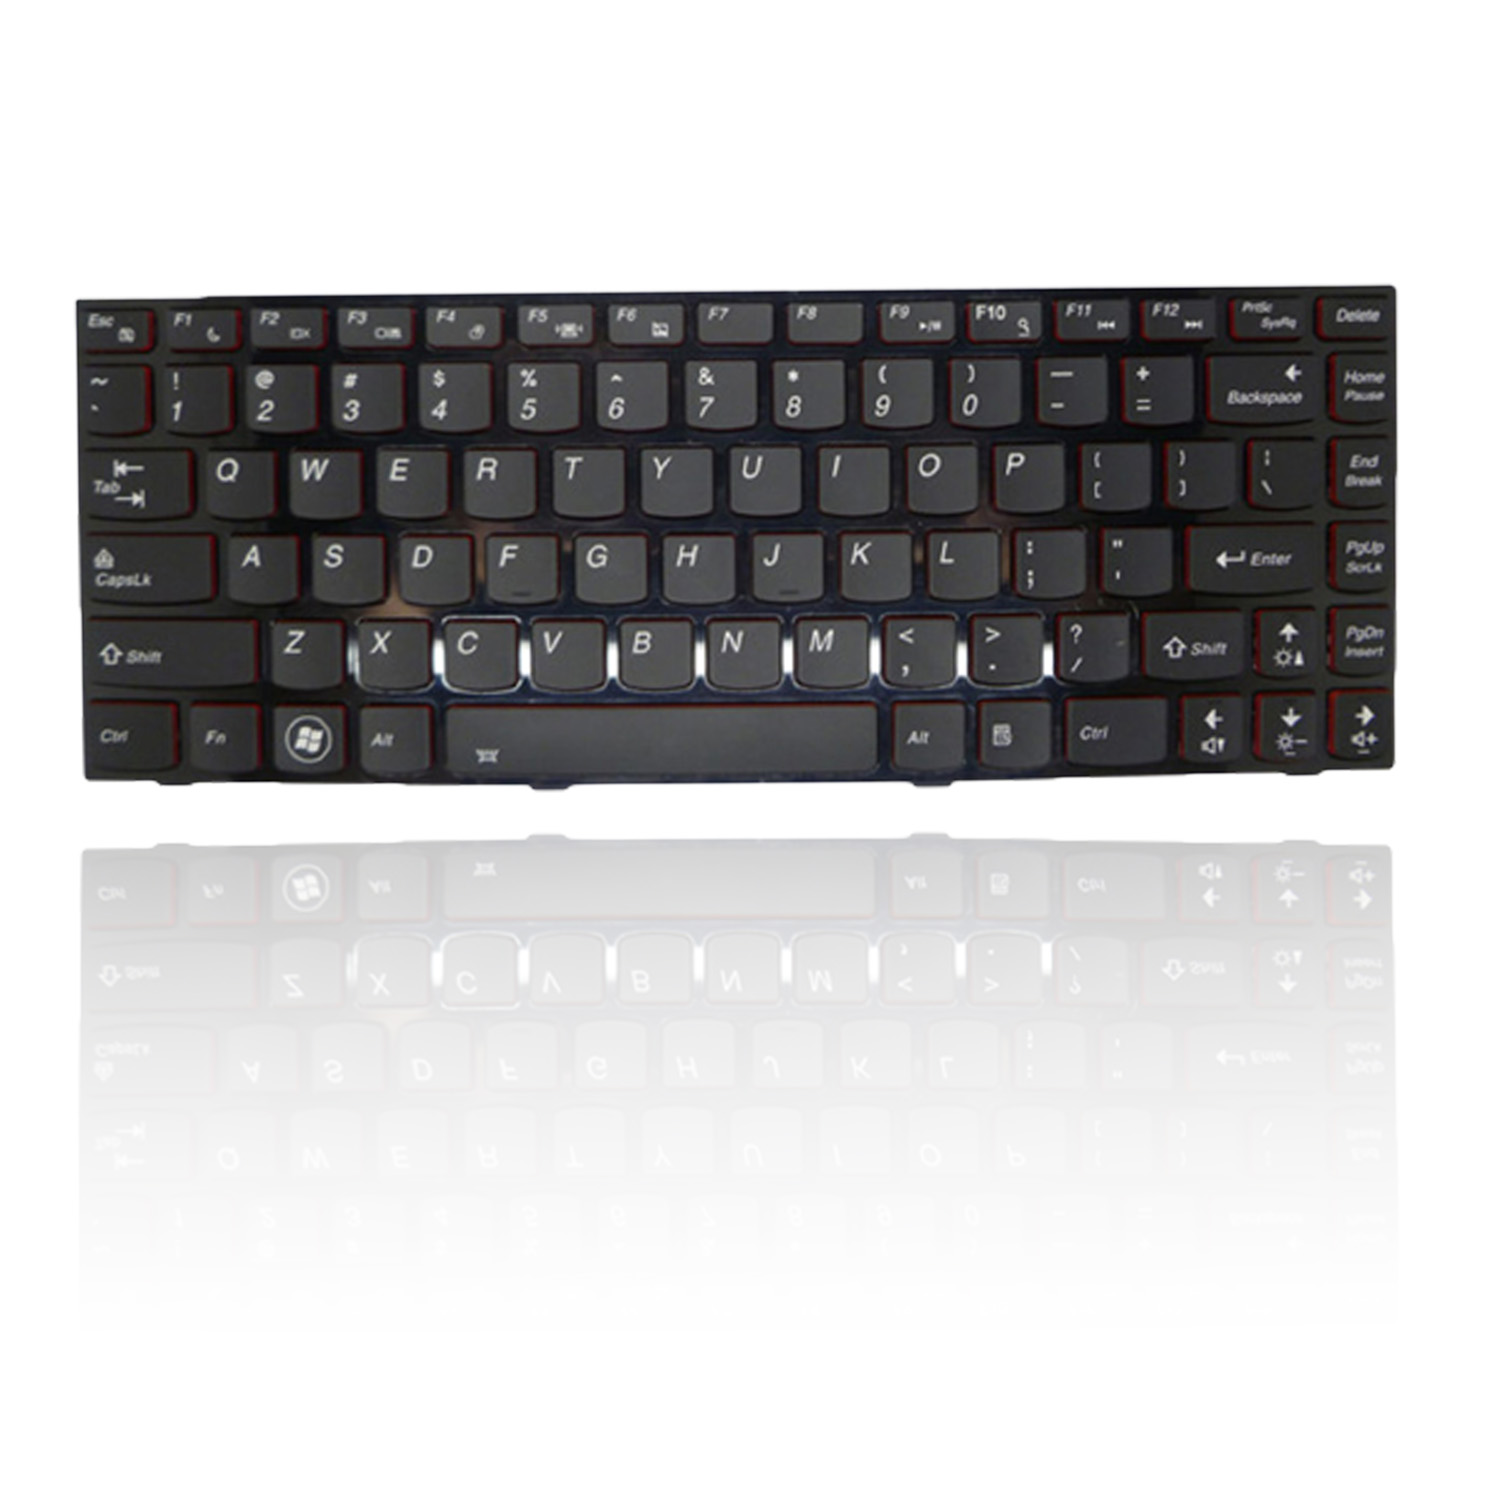 Lenovo y400 Normal Black Keyboard